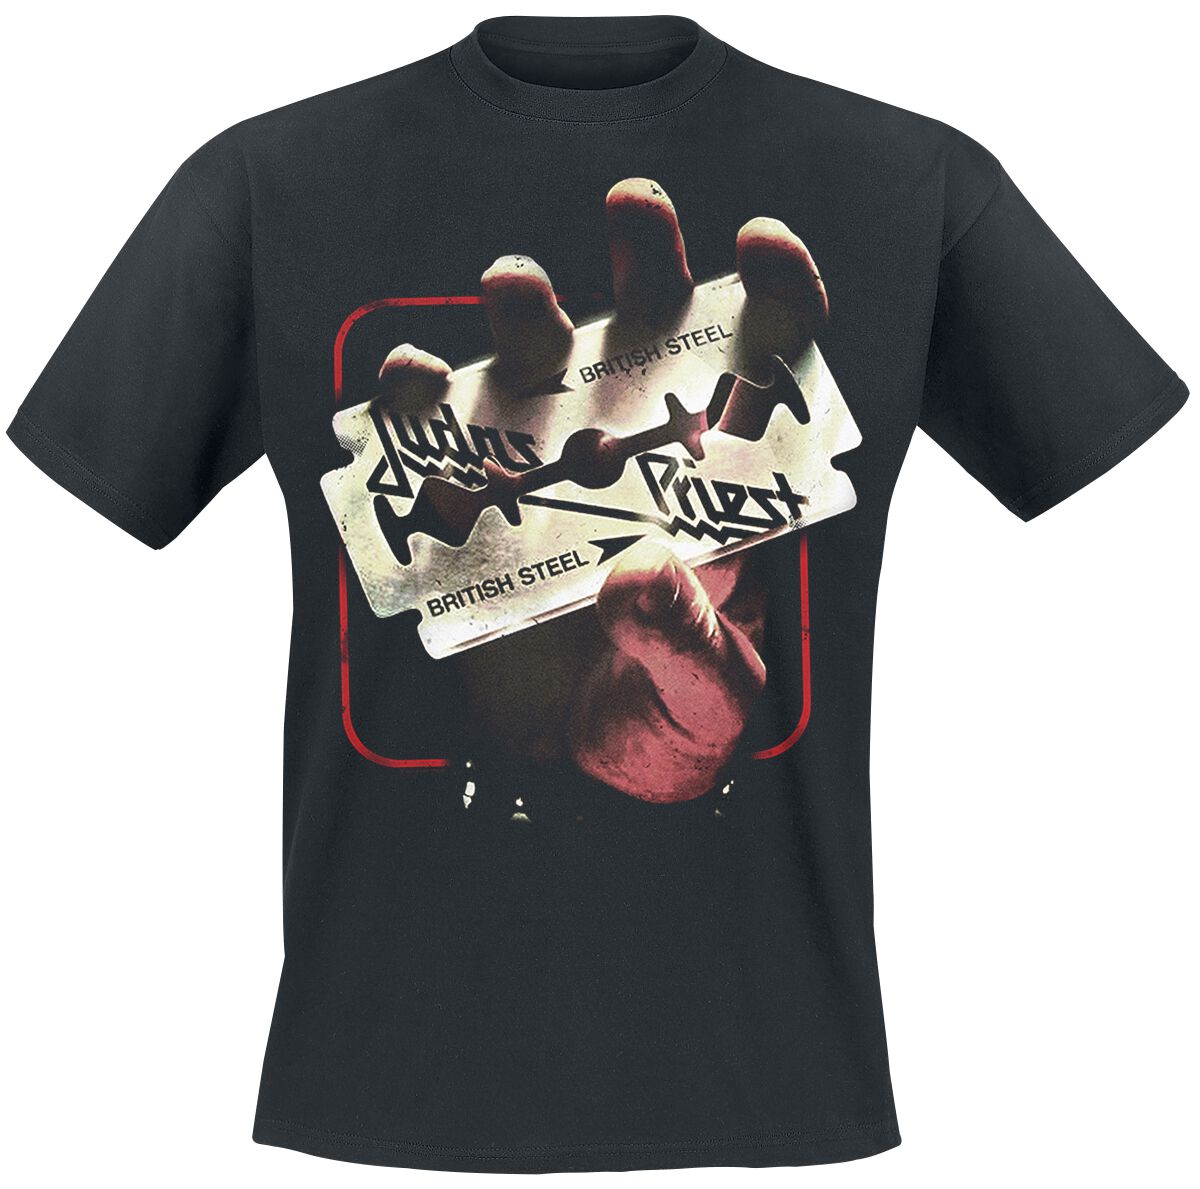 Judas Priest T-Shirt - British Steel 50HMY Tour - M bis XXL - für Männer - Größe XL - schwarz  - EMP exklusives Merchandise!